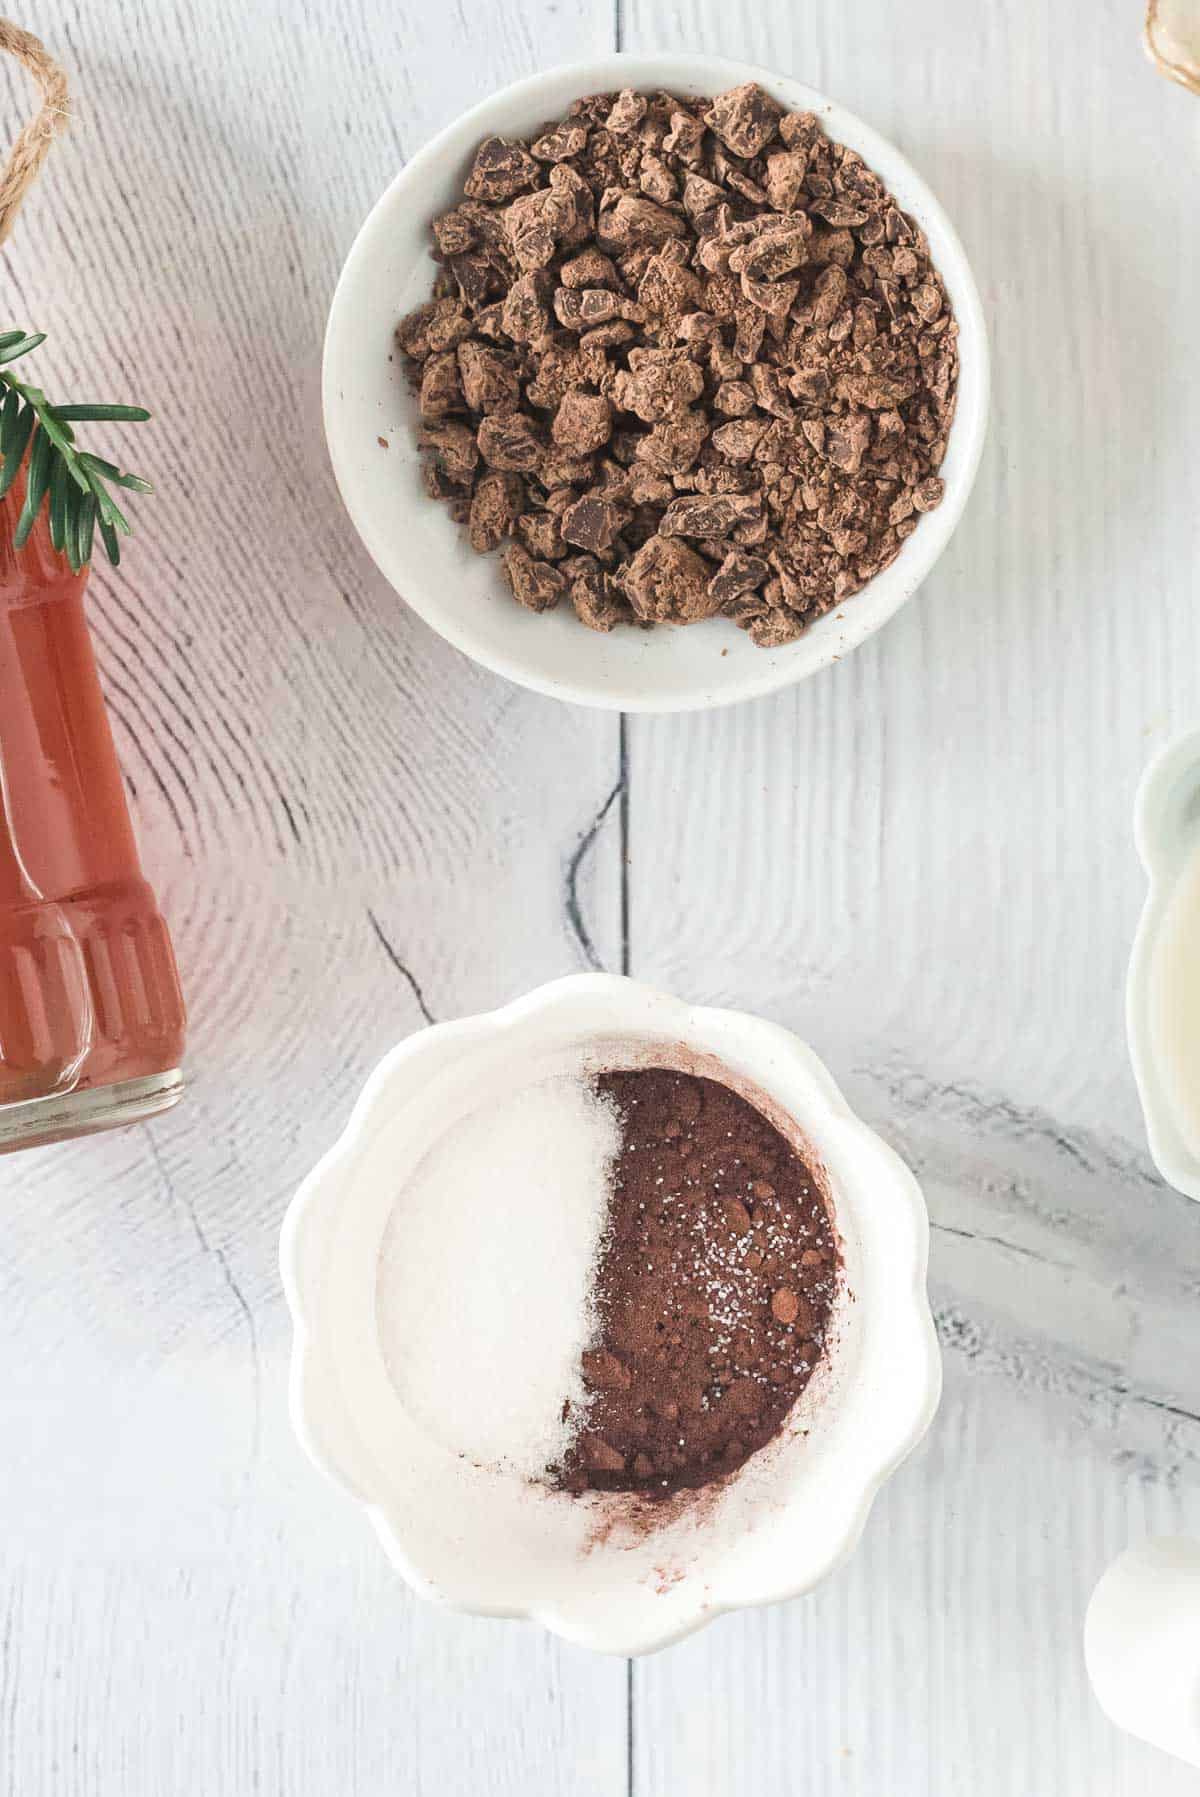 Cocoa powder and sugar in a small bowl.